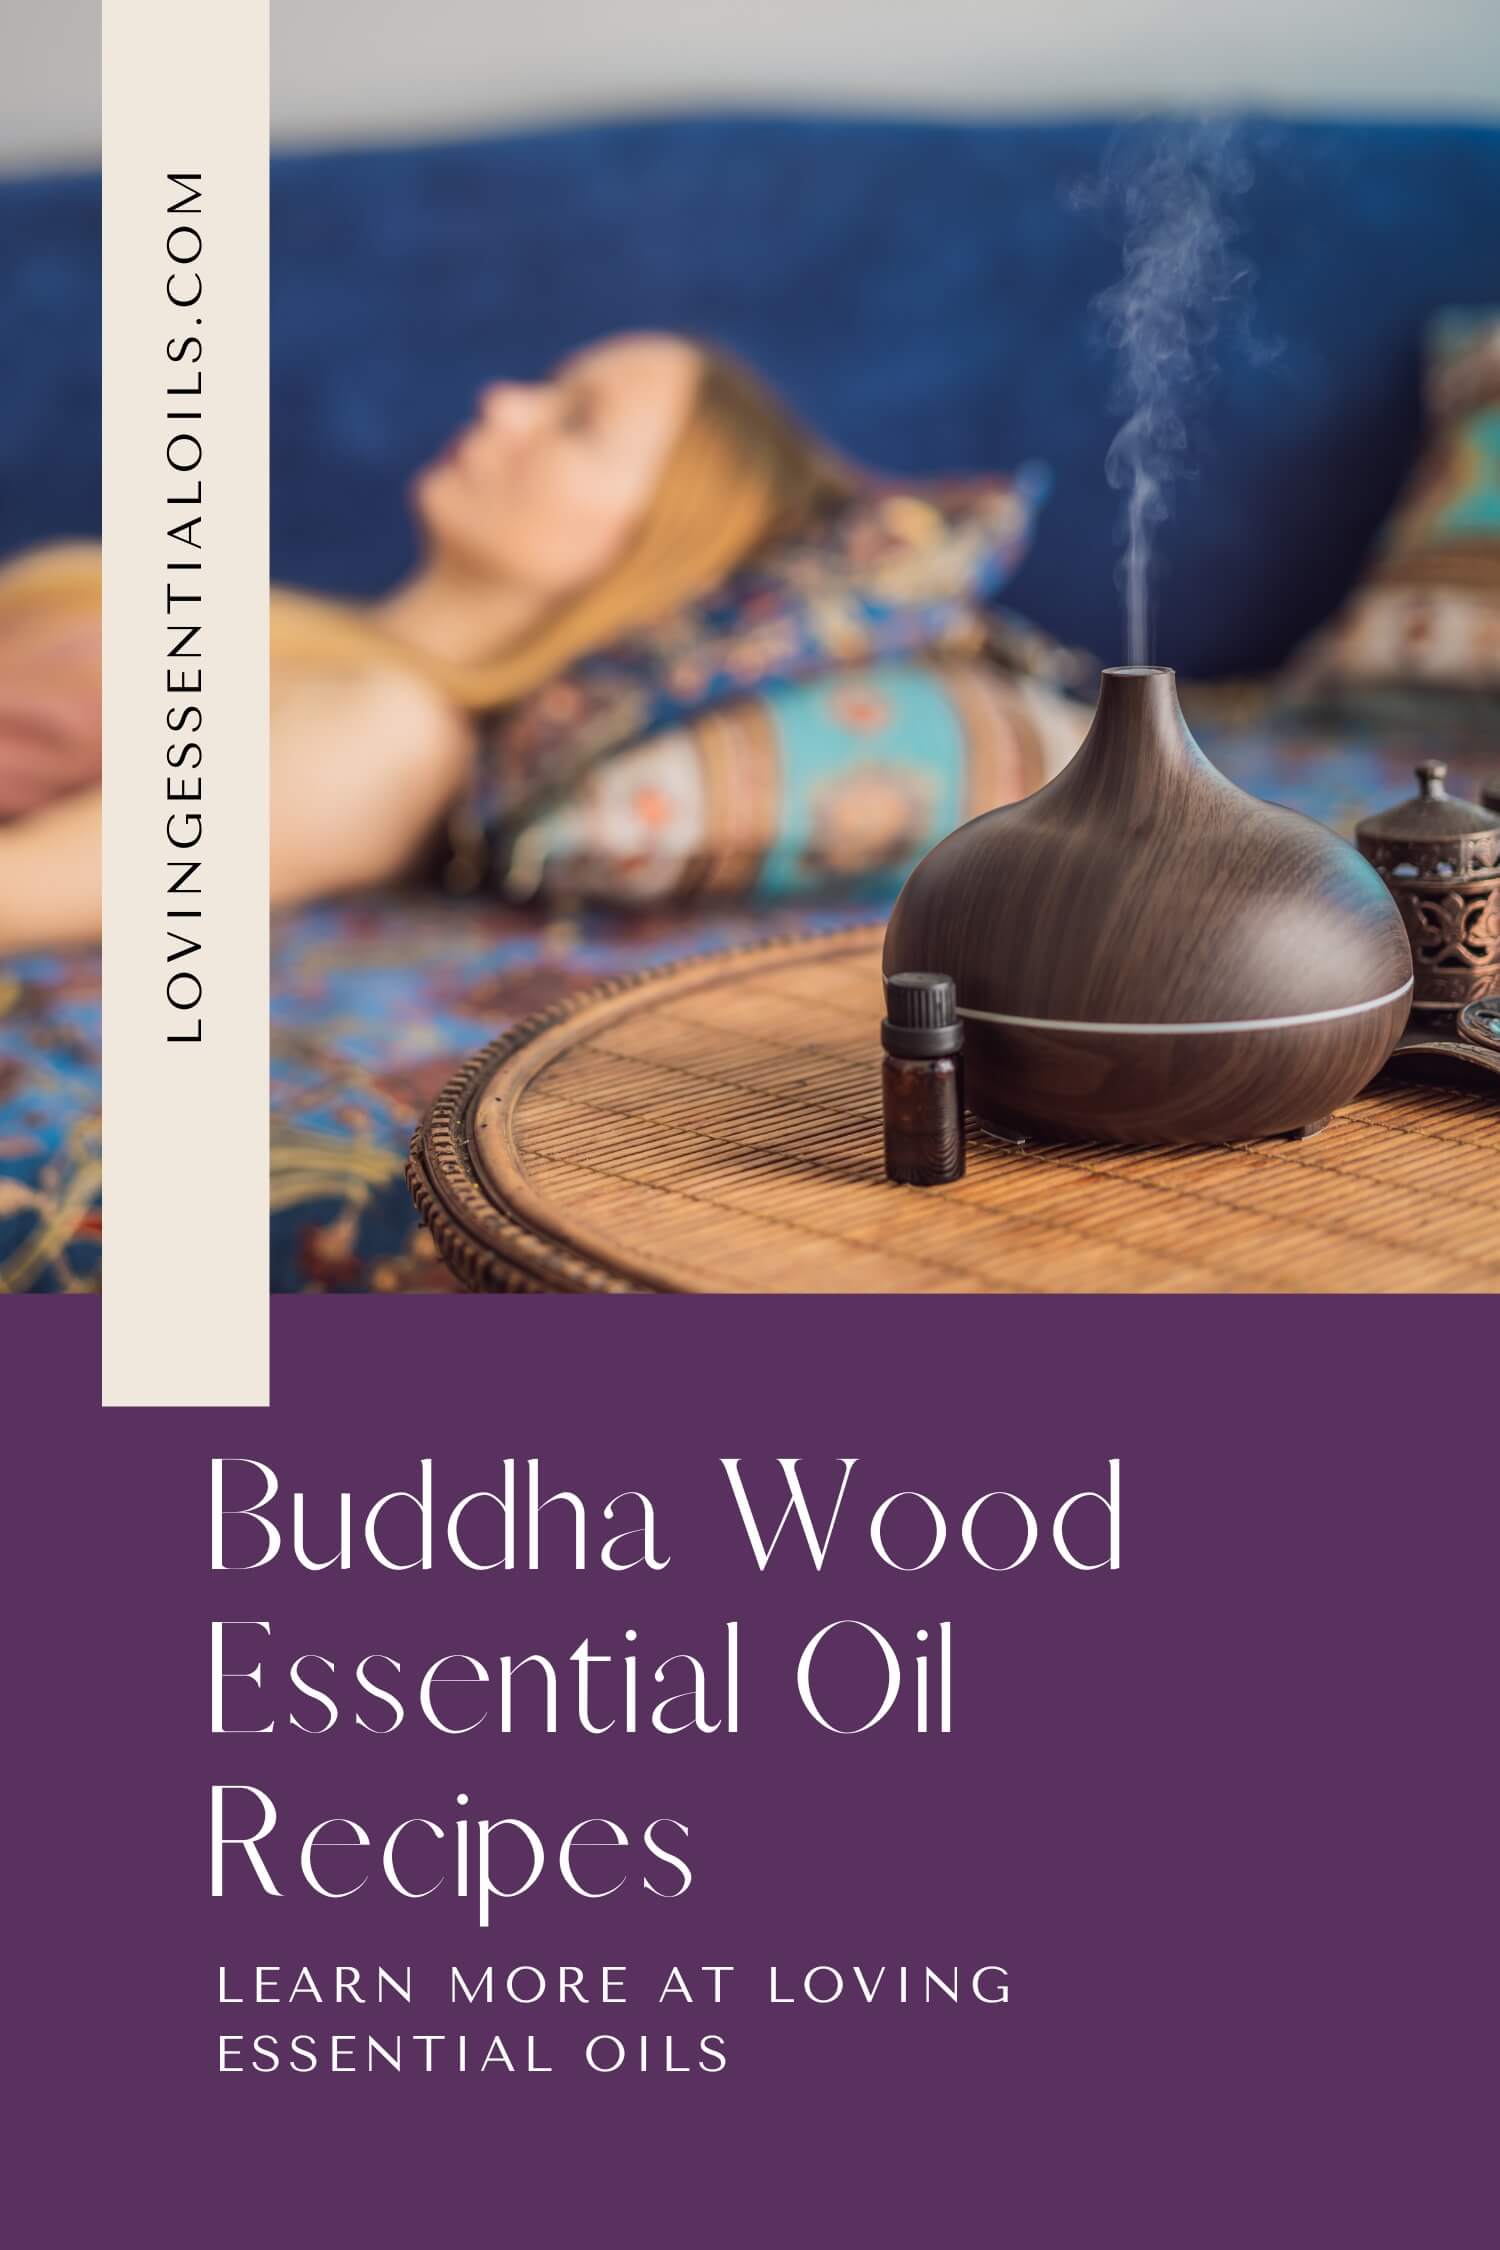 Buddha Wood Essential Oil Recipes by Loving Essential Oils